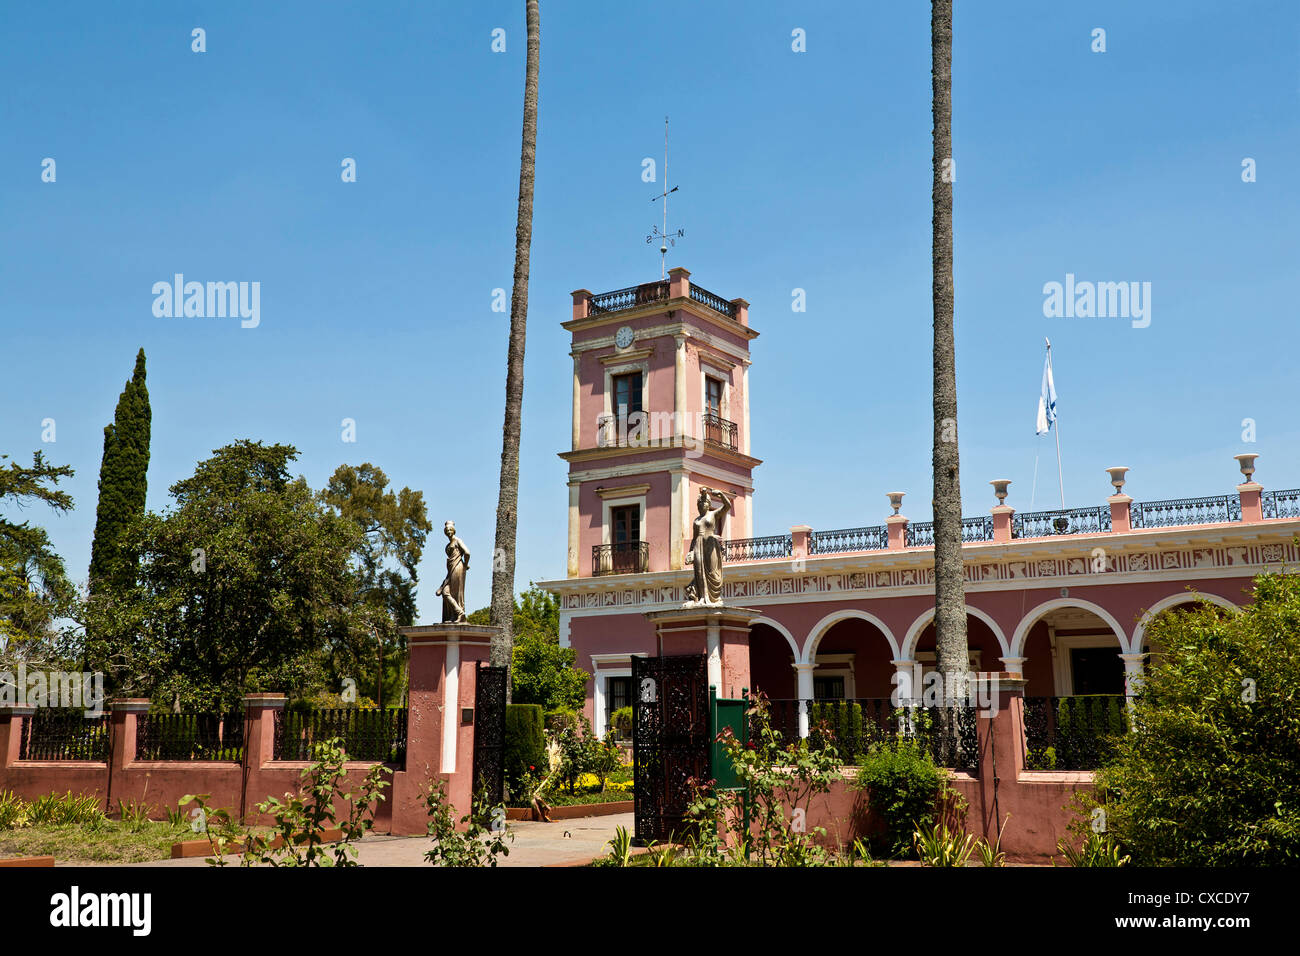 Palacio San Jose, Concepcion del Uruguay, Entre Rios Province, Argentina. Stock Photo